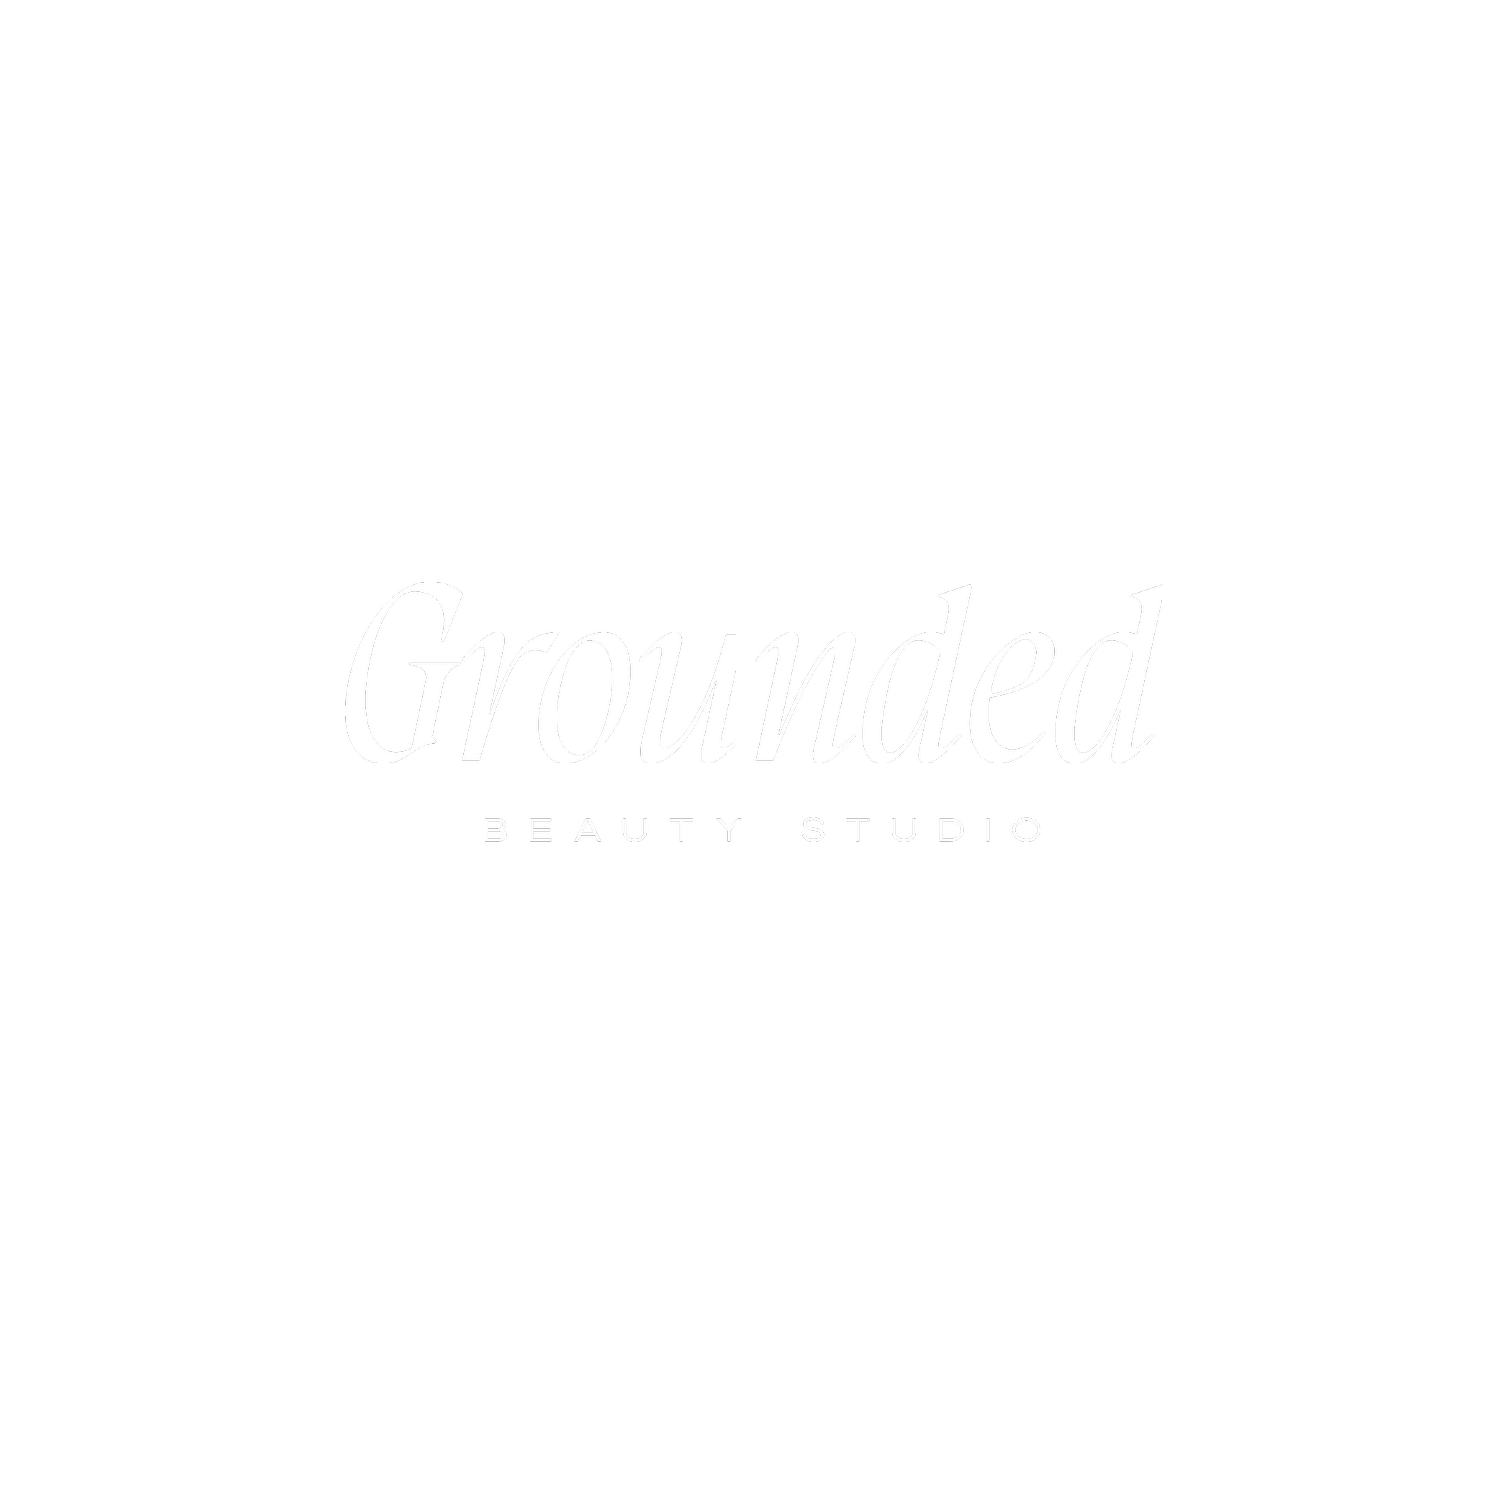 Grounded Beauty Studio